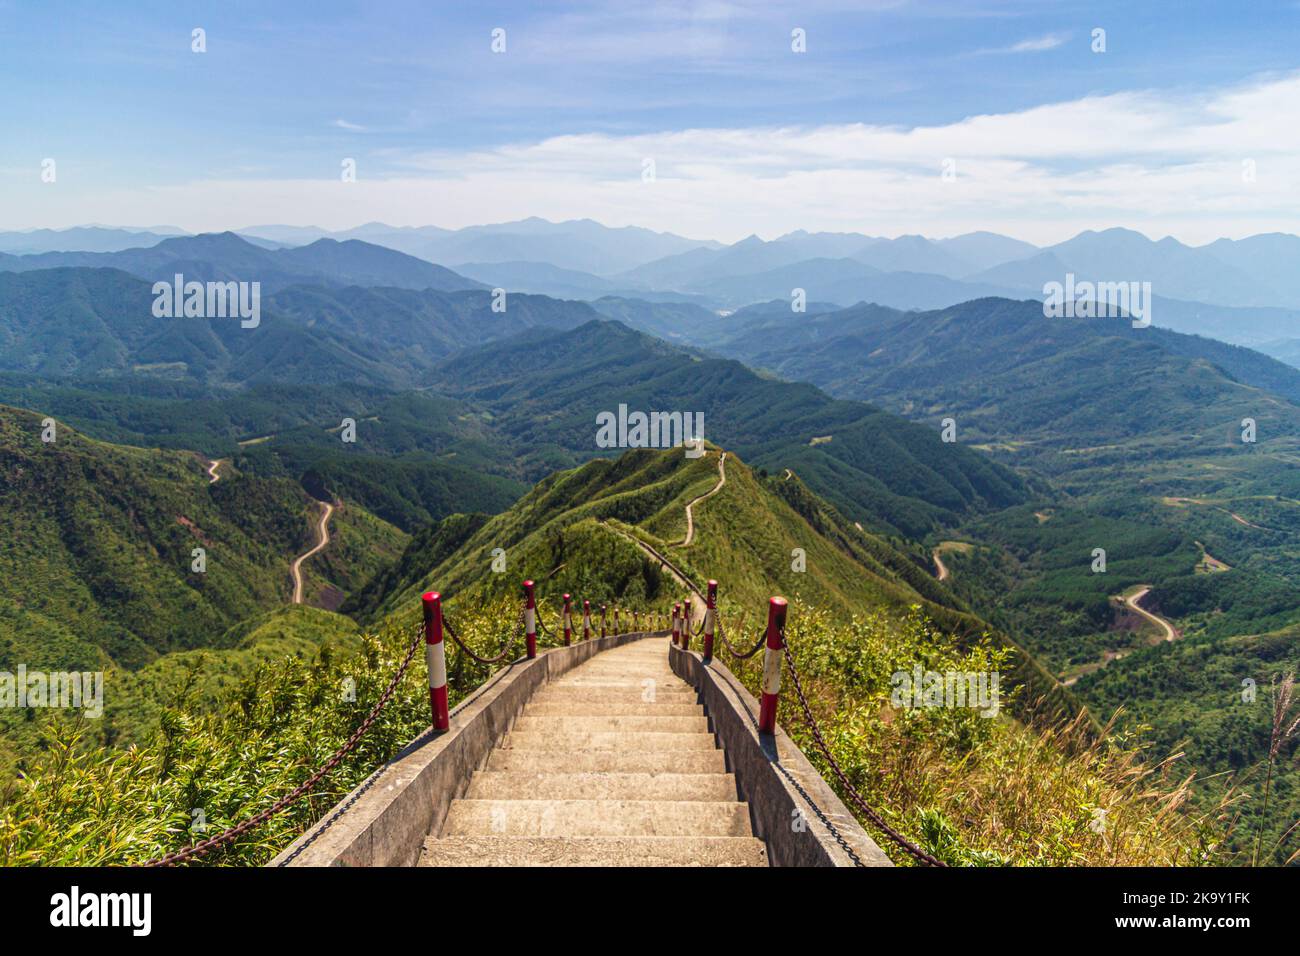 Immagine panoramica dell'area delle montagne di Binh Lieu nella provincia di Quang Ninh nel nord-est del Vietnam. Questa è la regione di confine tra Vietnam e Cina. Foto di alta qualità Foto Stock